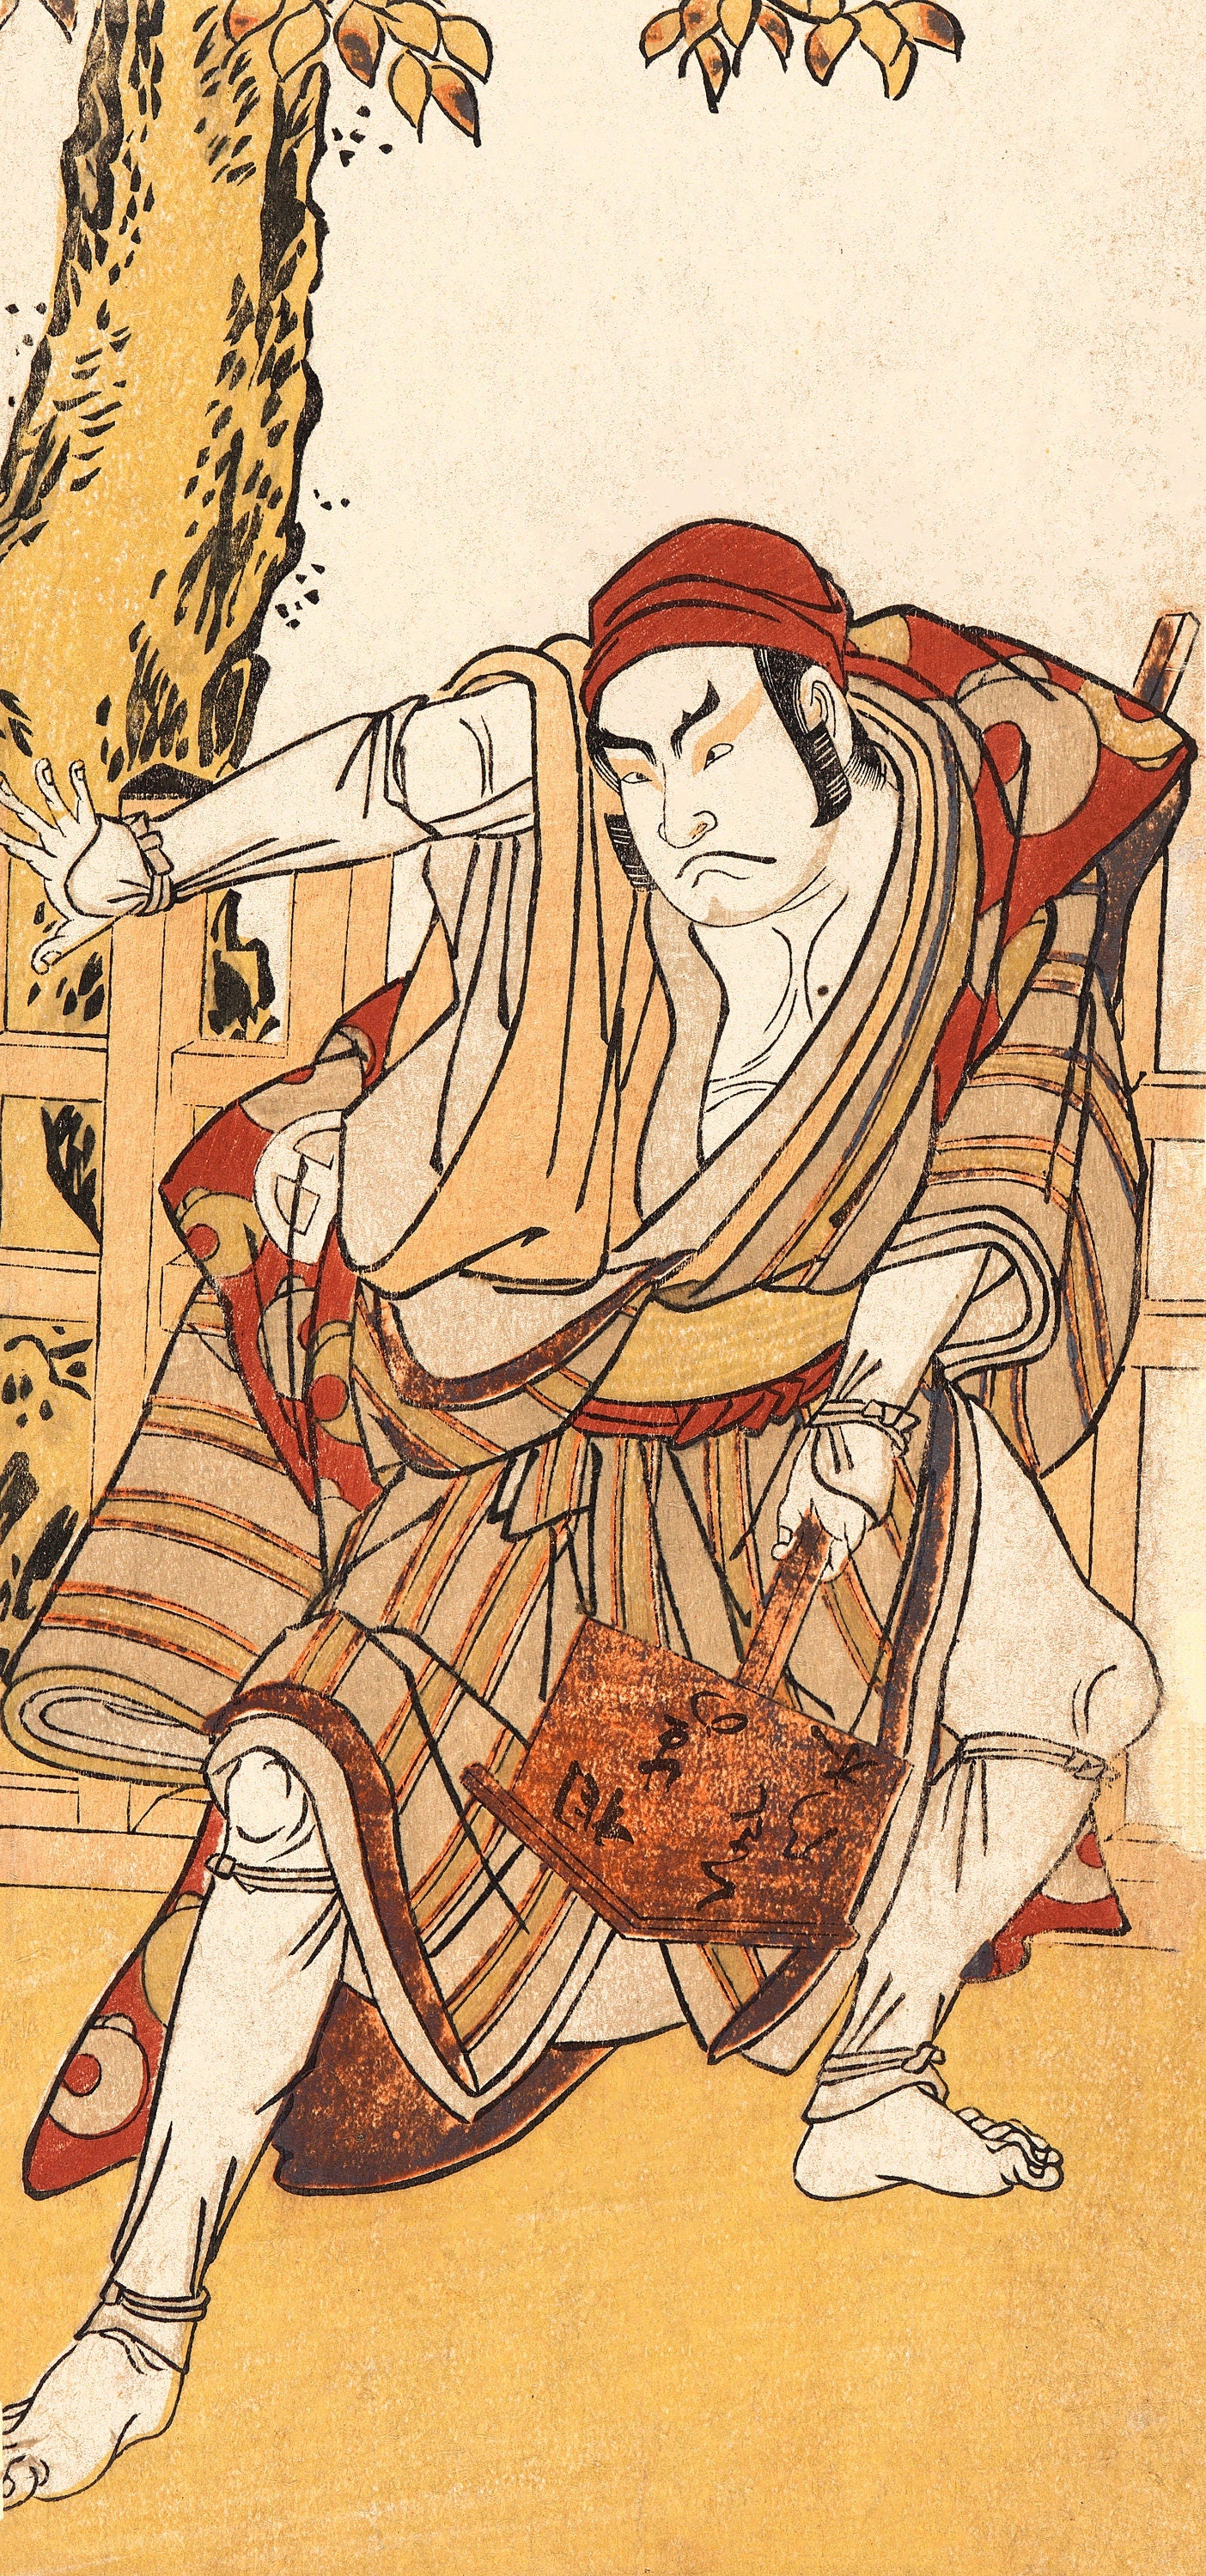 Katsukawa Shunko Kabuki Actor & Courtesan Woodblock Prints [10 Images]